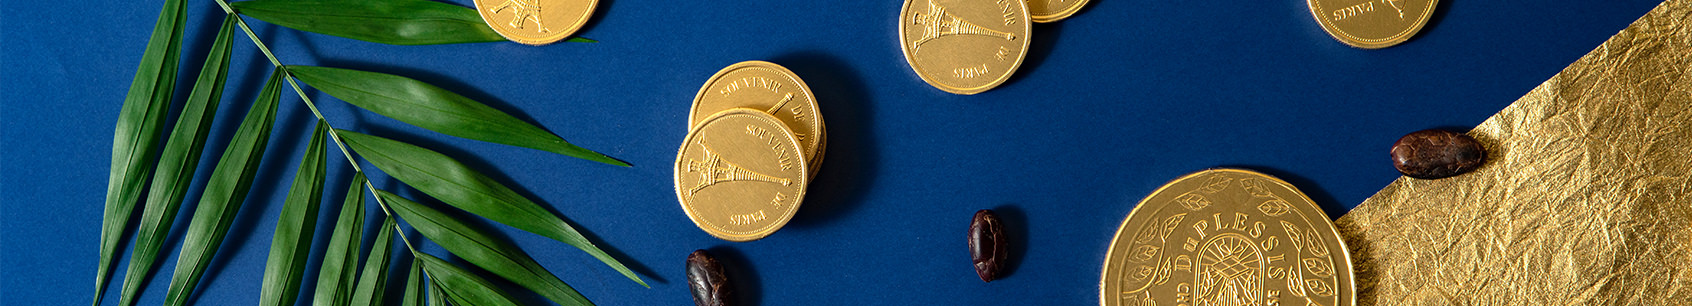 Chocolats Personnalisés : Napolitains, Médailles, pièces et Tablettes